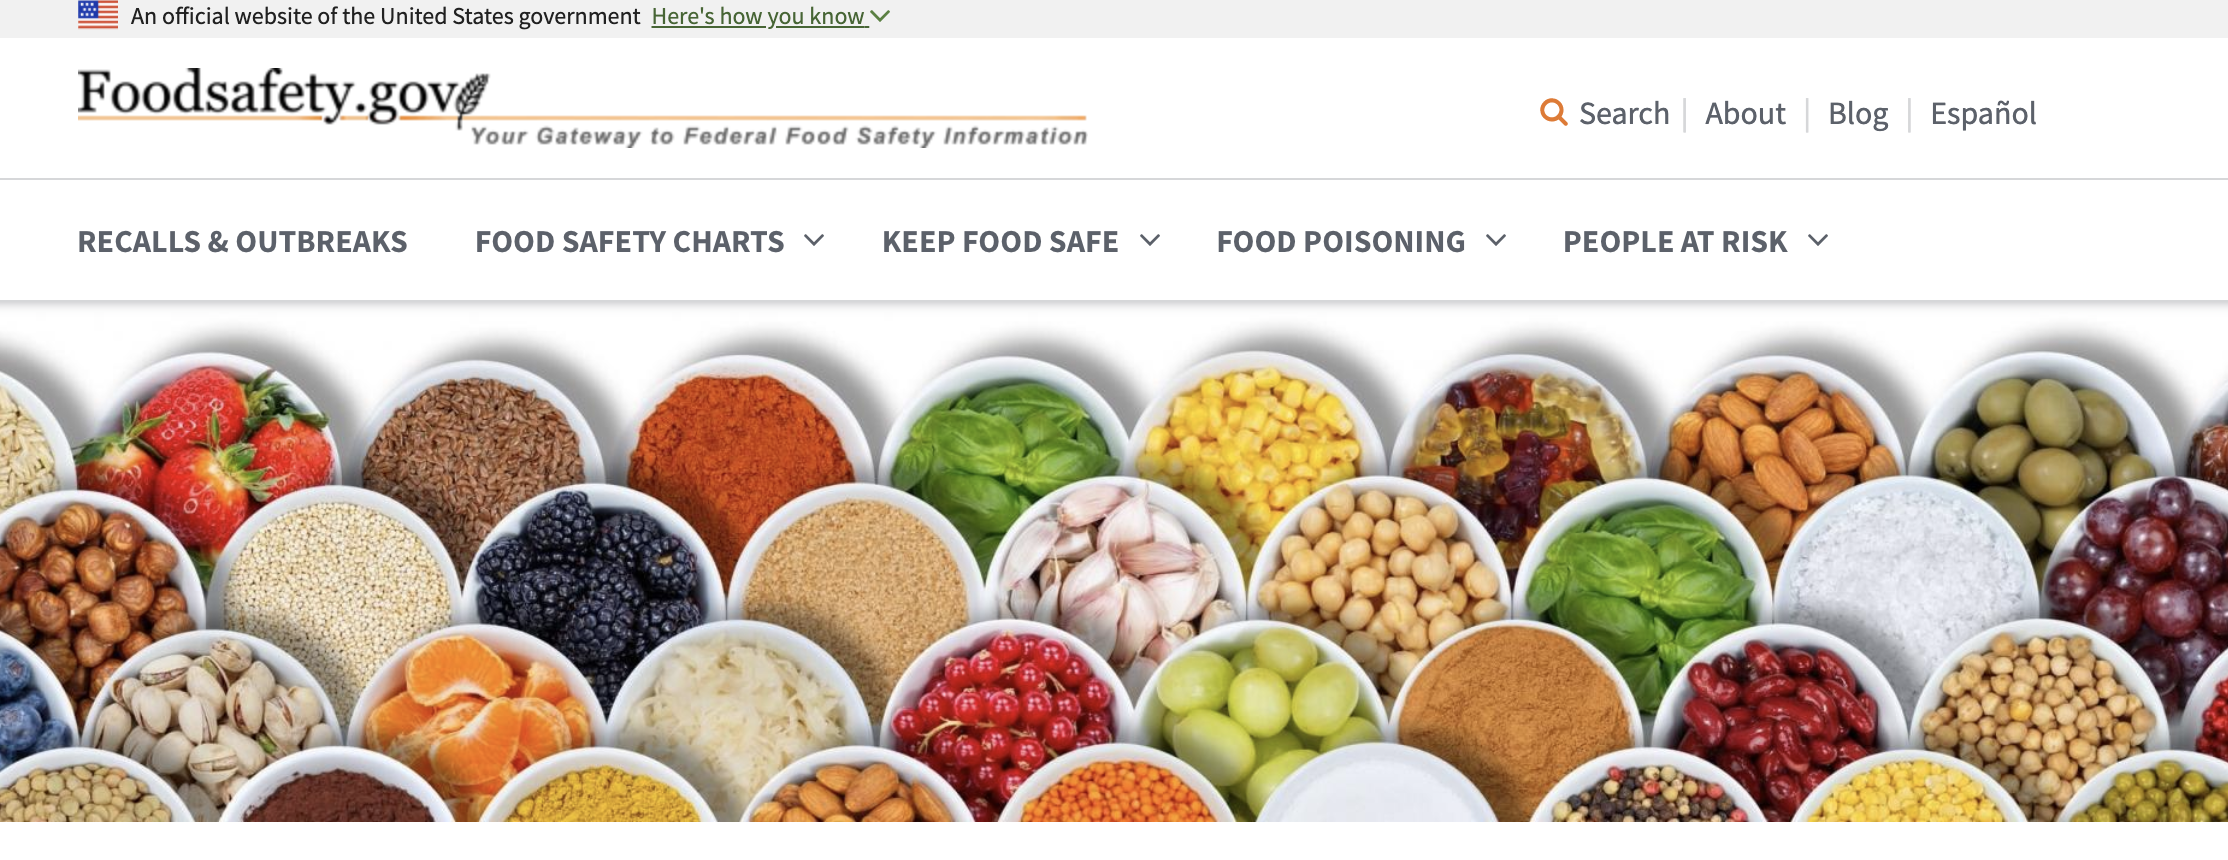 Foodsafety.gov page header